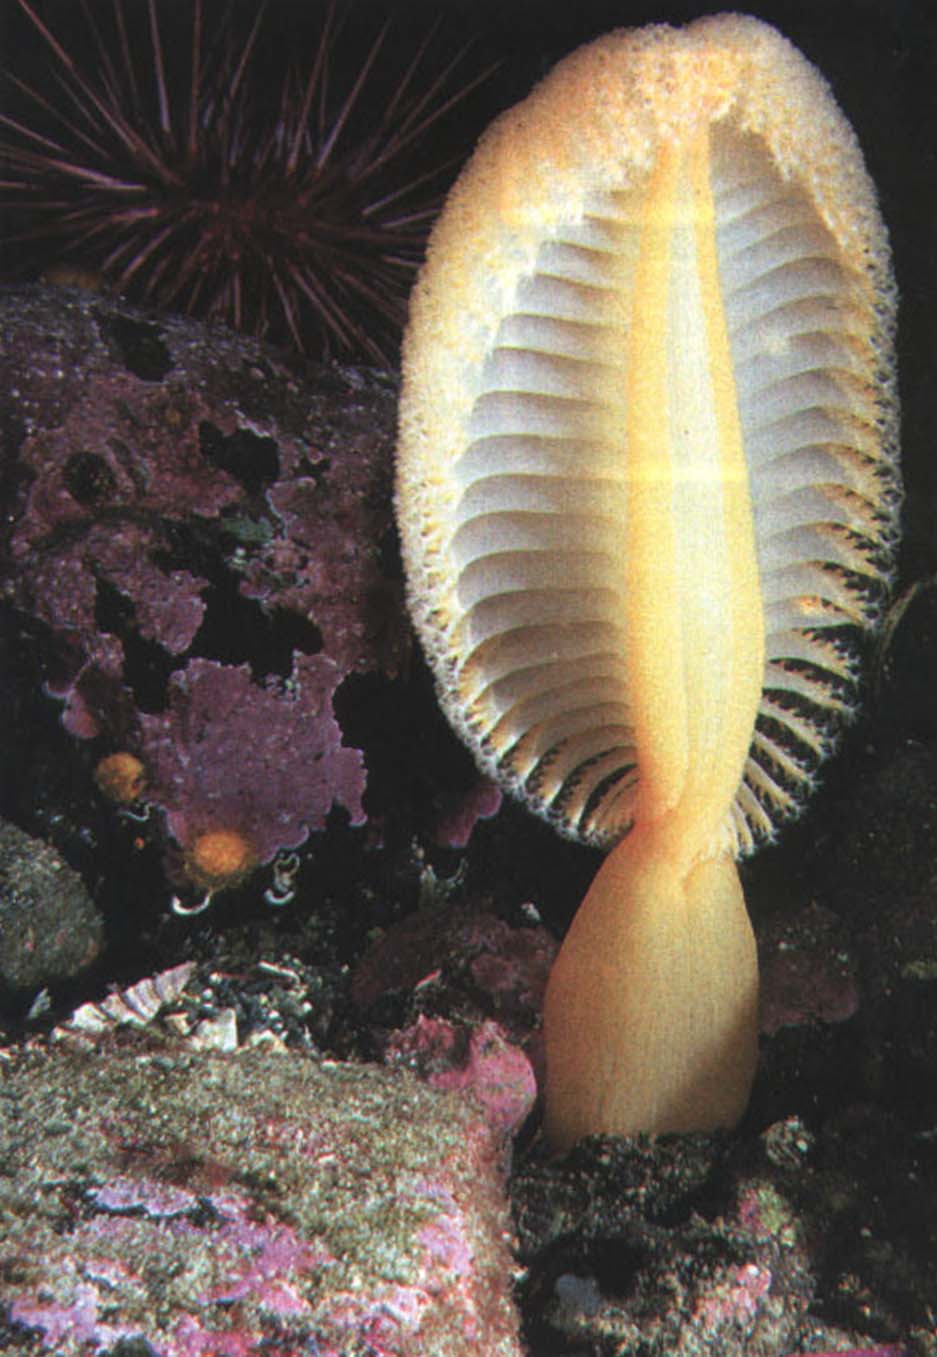 У полипов, образующих колонию морского пера, наблюдается дифференциация форм и специализация функций, однако все члены колонии действуют как единый живой организм.